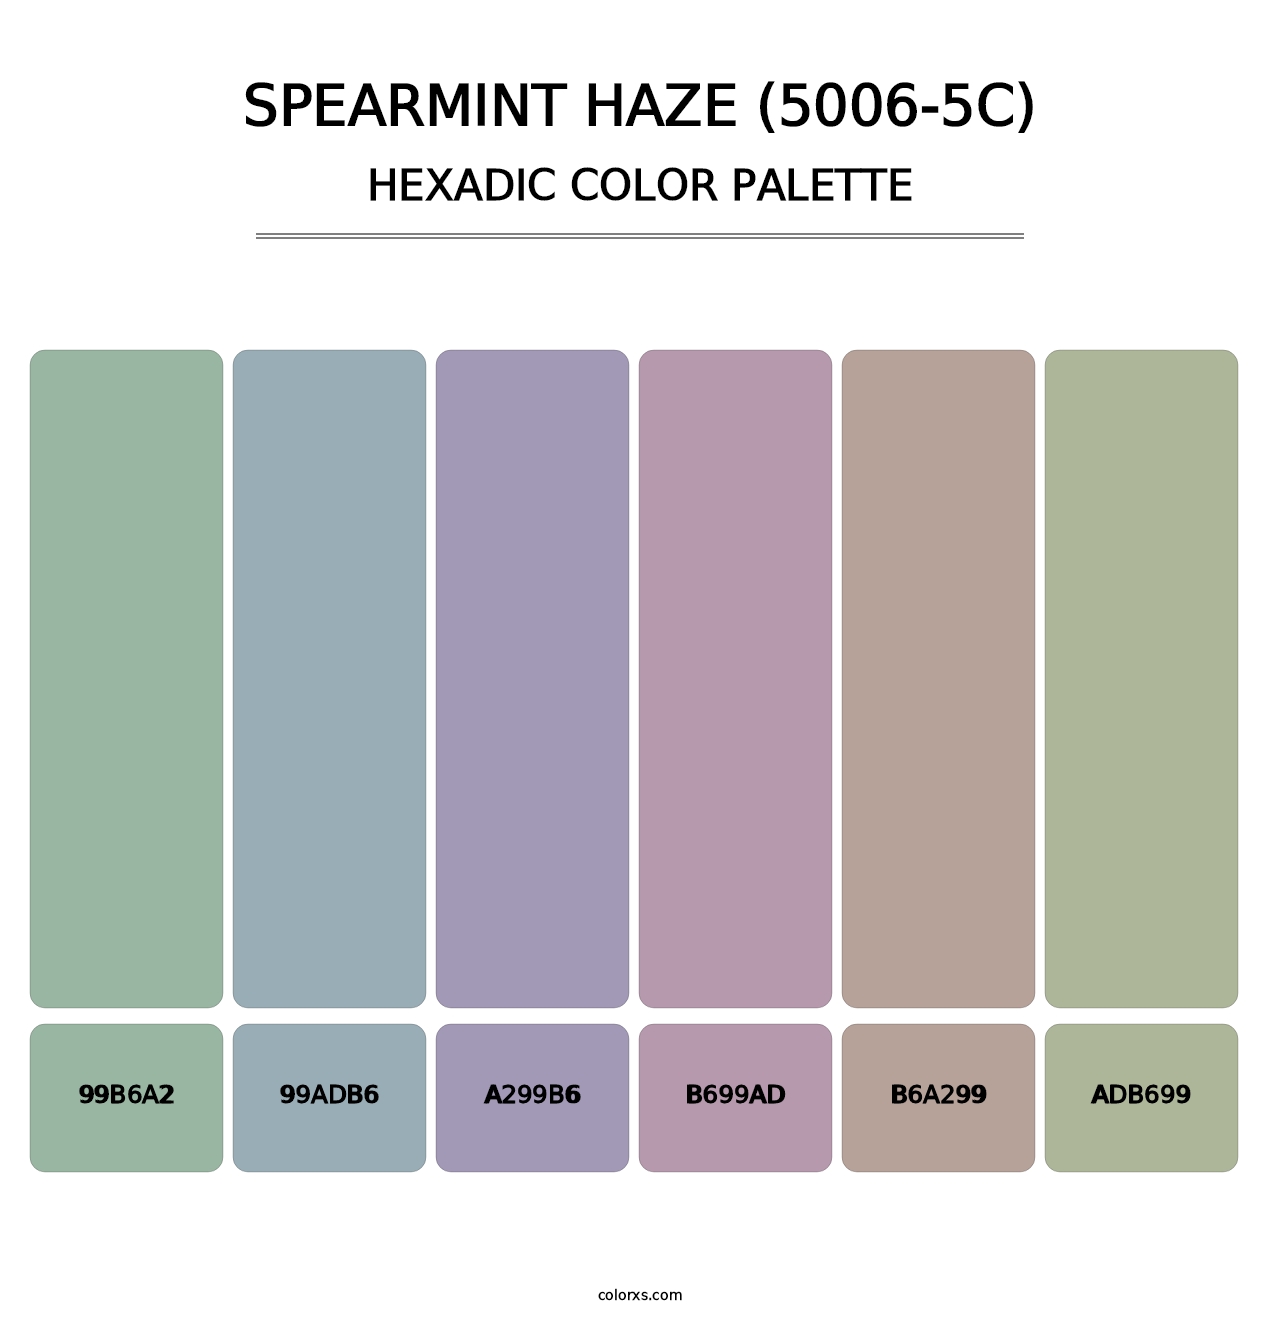 Spearmint Haze (5006-5C) - Hexadic Color Palette